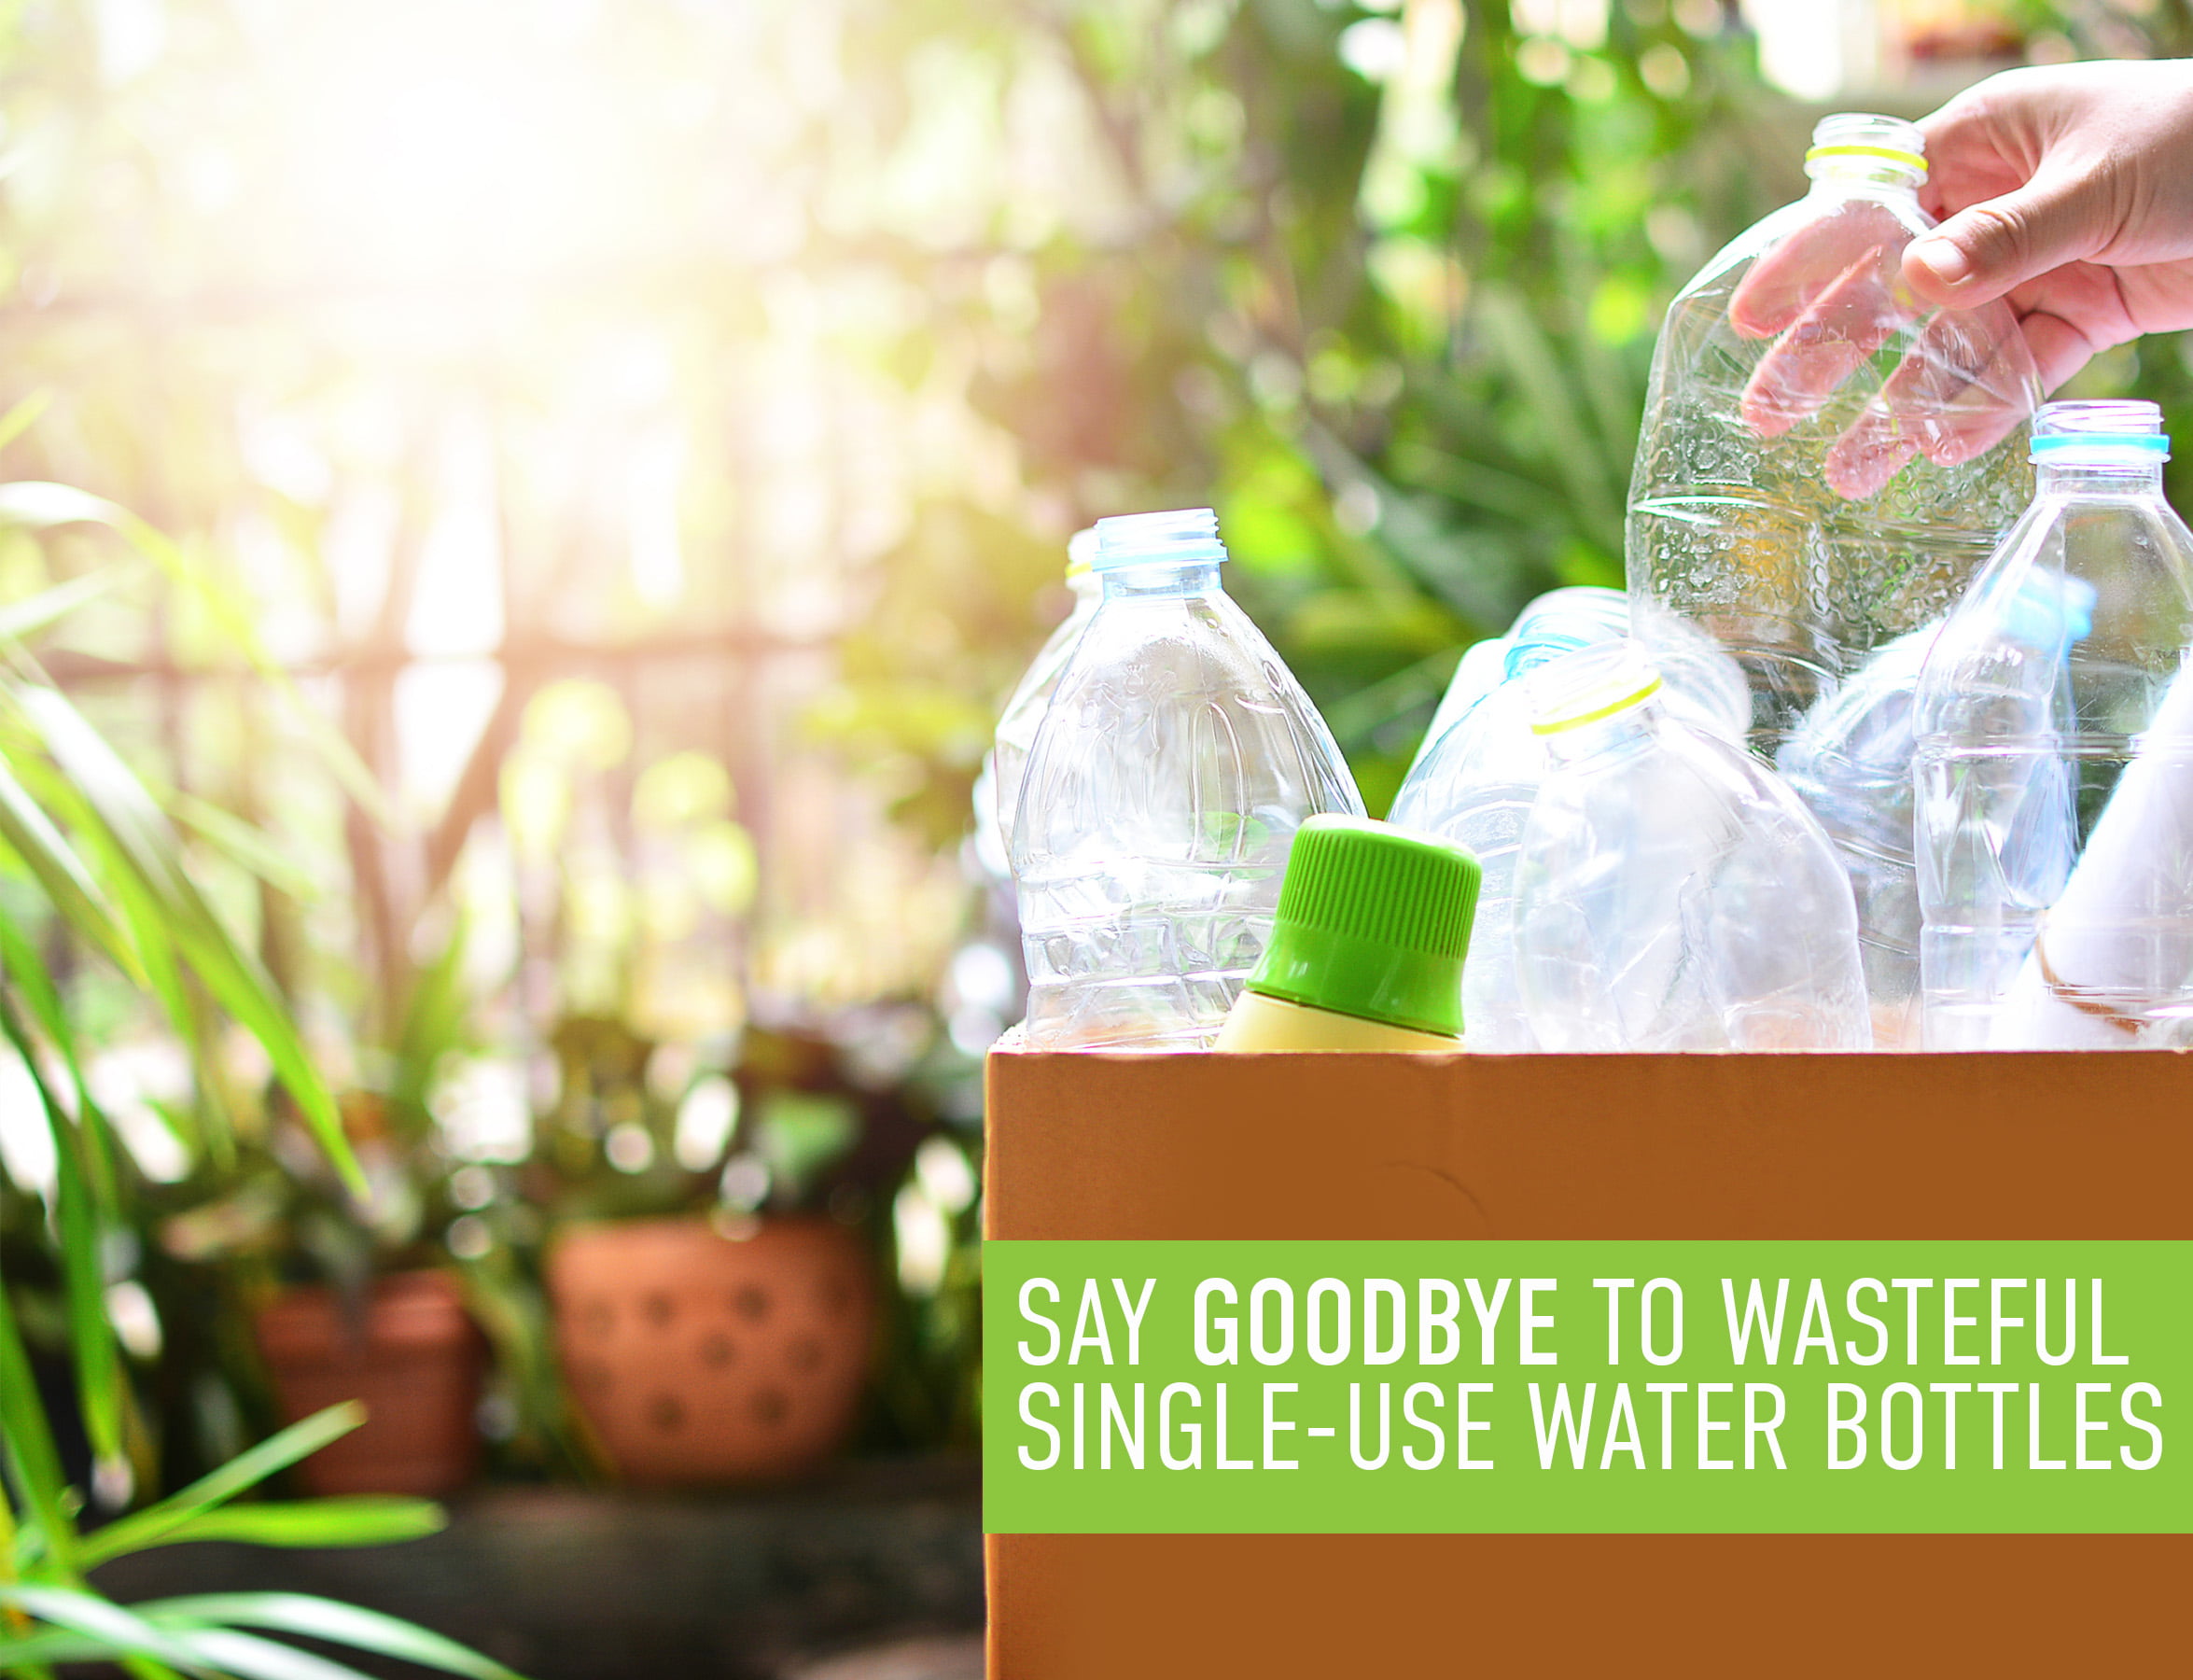 Reduce WaterWeek Refillable Water Bottles, 14 oz – Includes 5 WaterWeek  Leak Proof Tritan Reusable W…See more Reduce WaterWeek Refillable Water